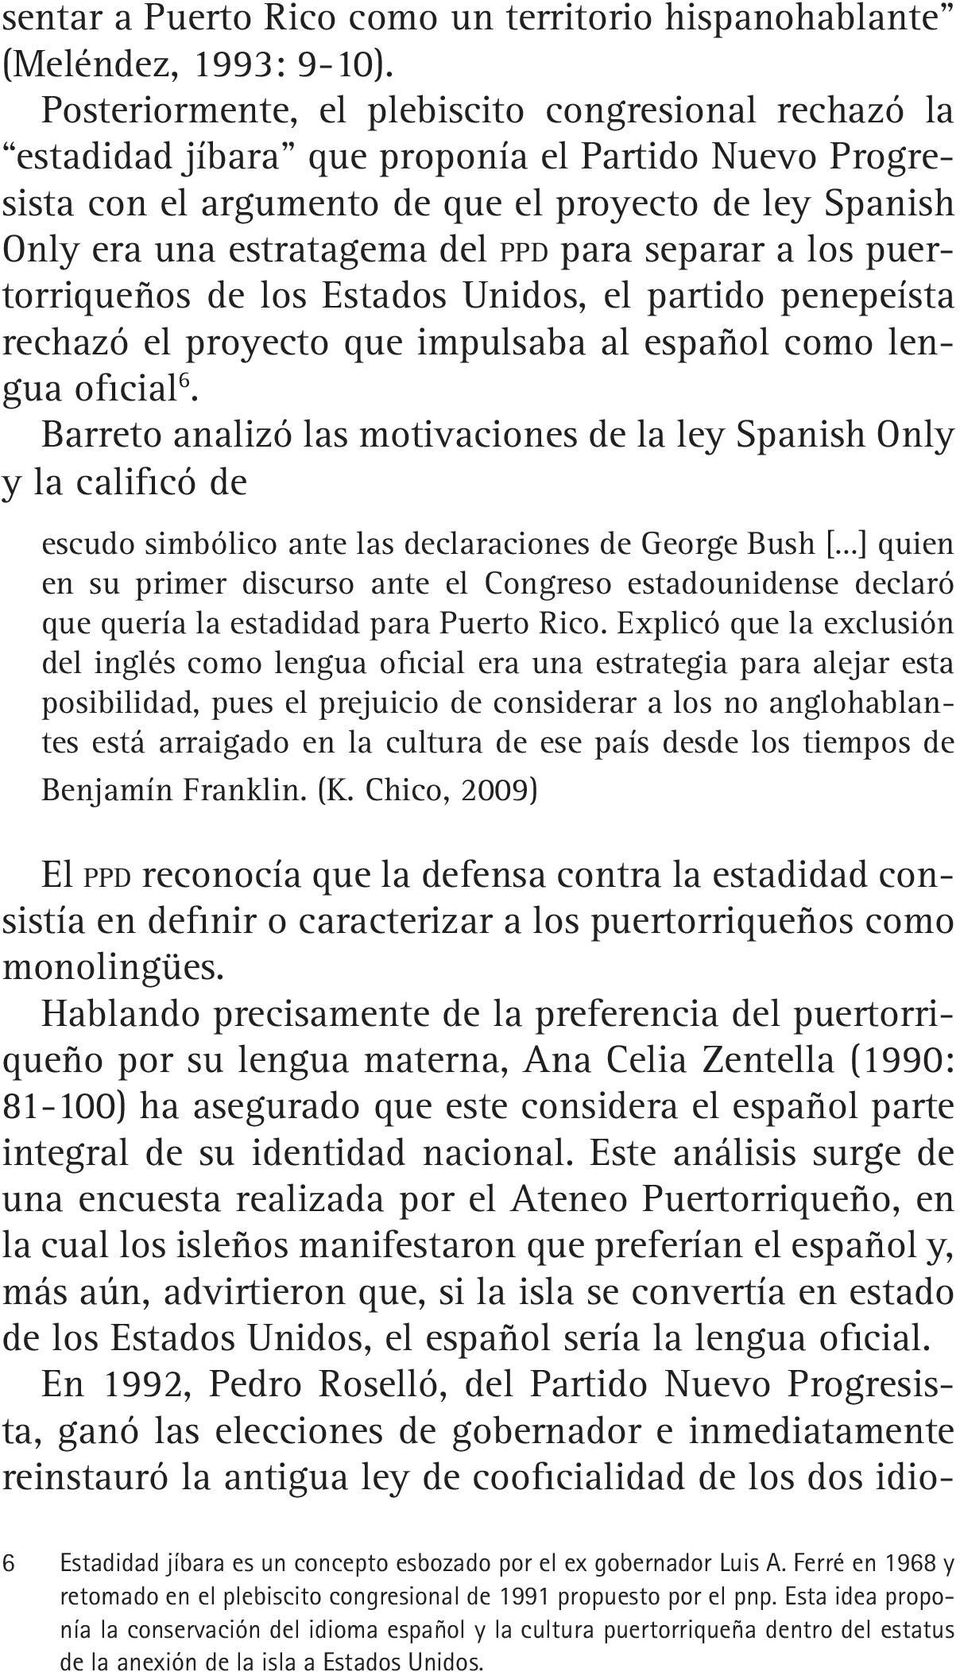 para separar a los puertorriqueños de los Estados Unidos, el partido penepeísta rechazó el proyecto que impulsaba al español como lengua oficial 6.